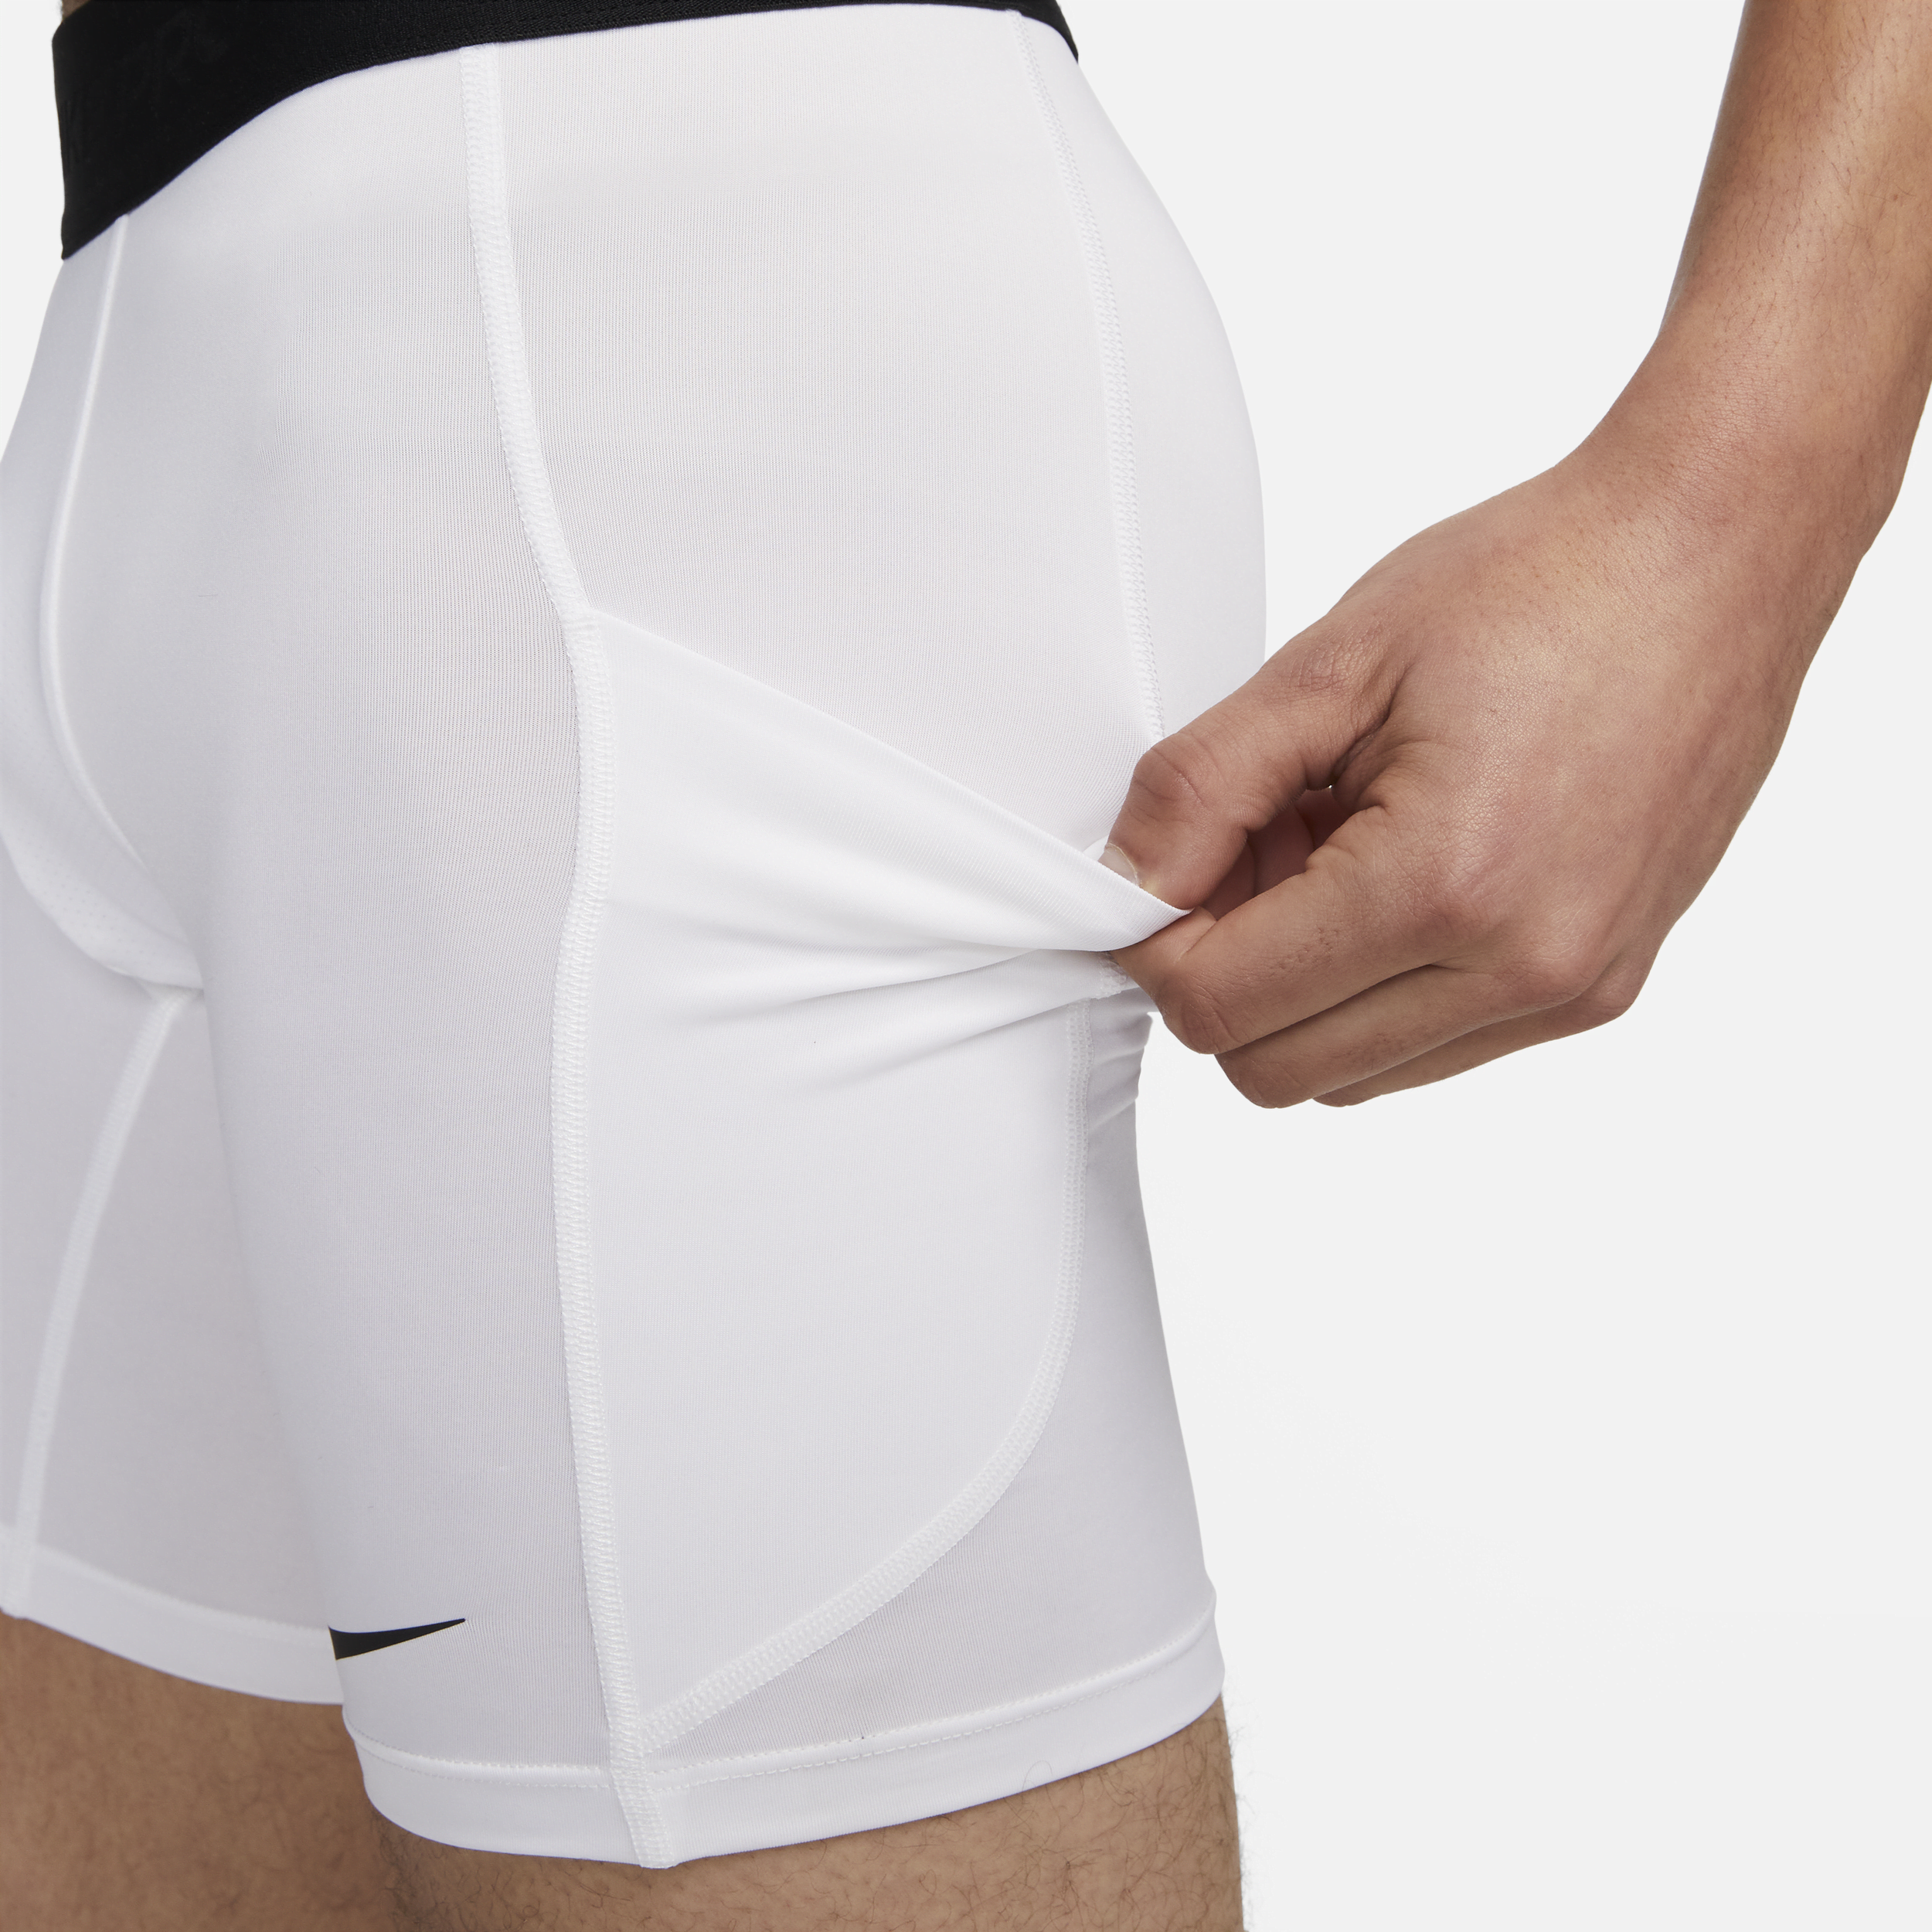 Nike Pro Dri-FIT fitnessshorts voor heren Wit